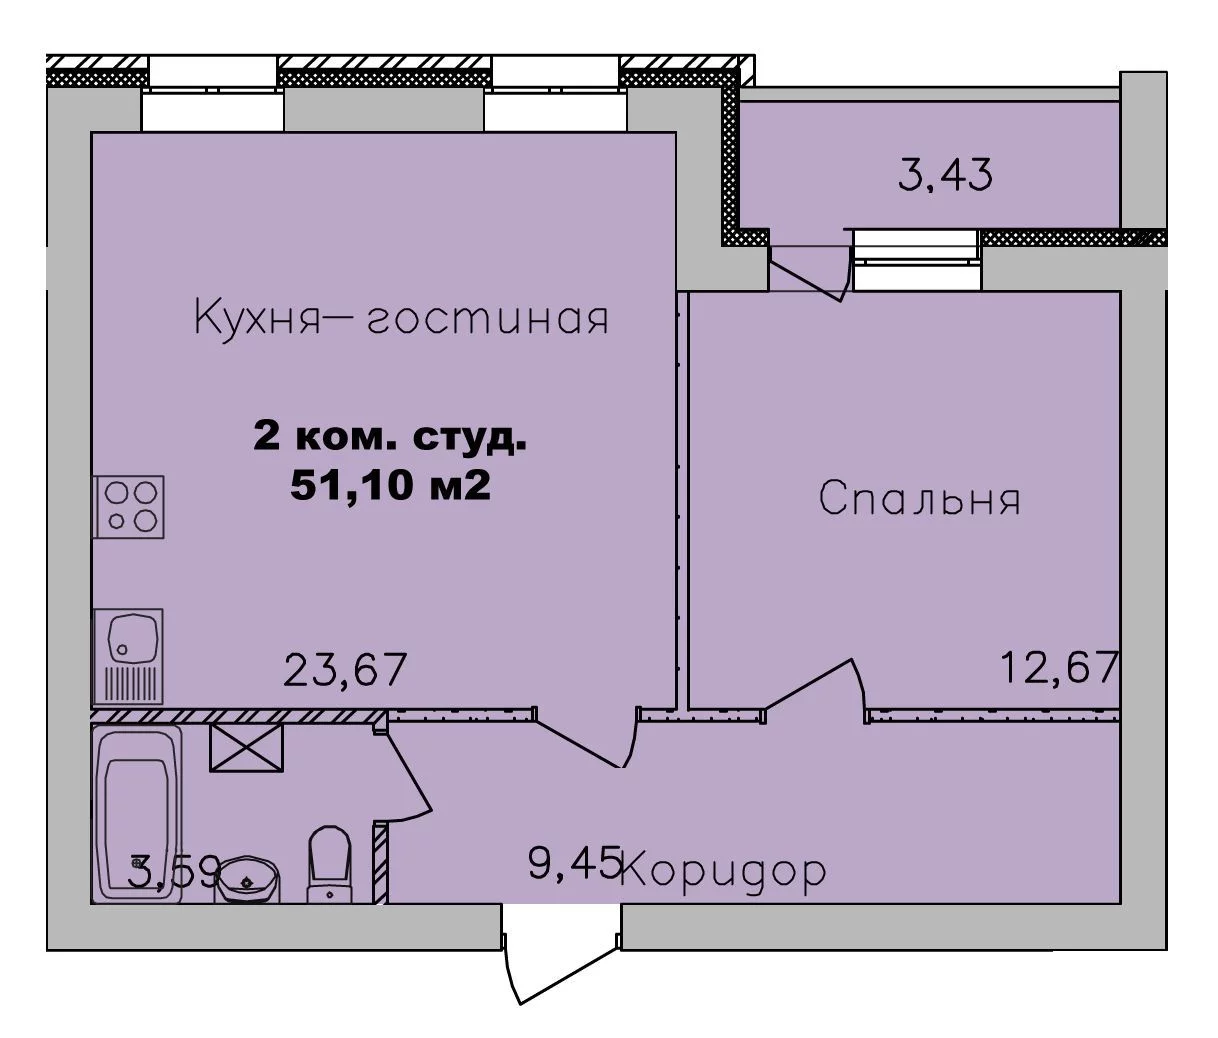 ЖК Дивногорский, дом 24, планировка двухкомнатная-студия 51,1 м2